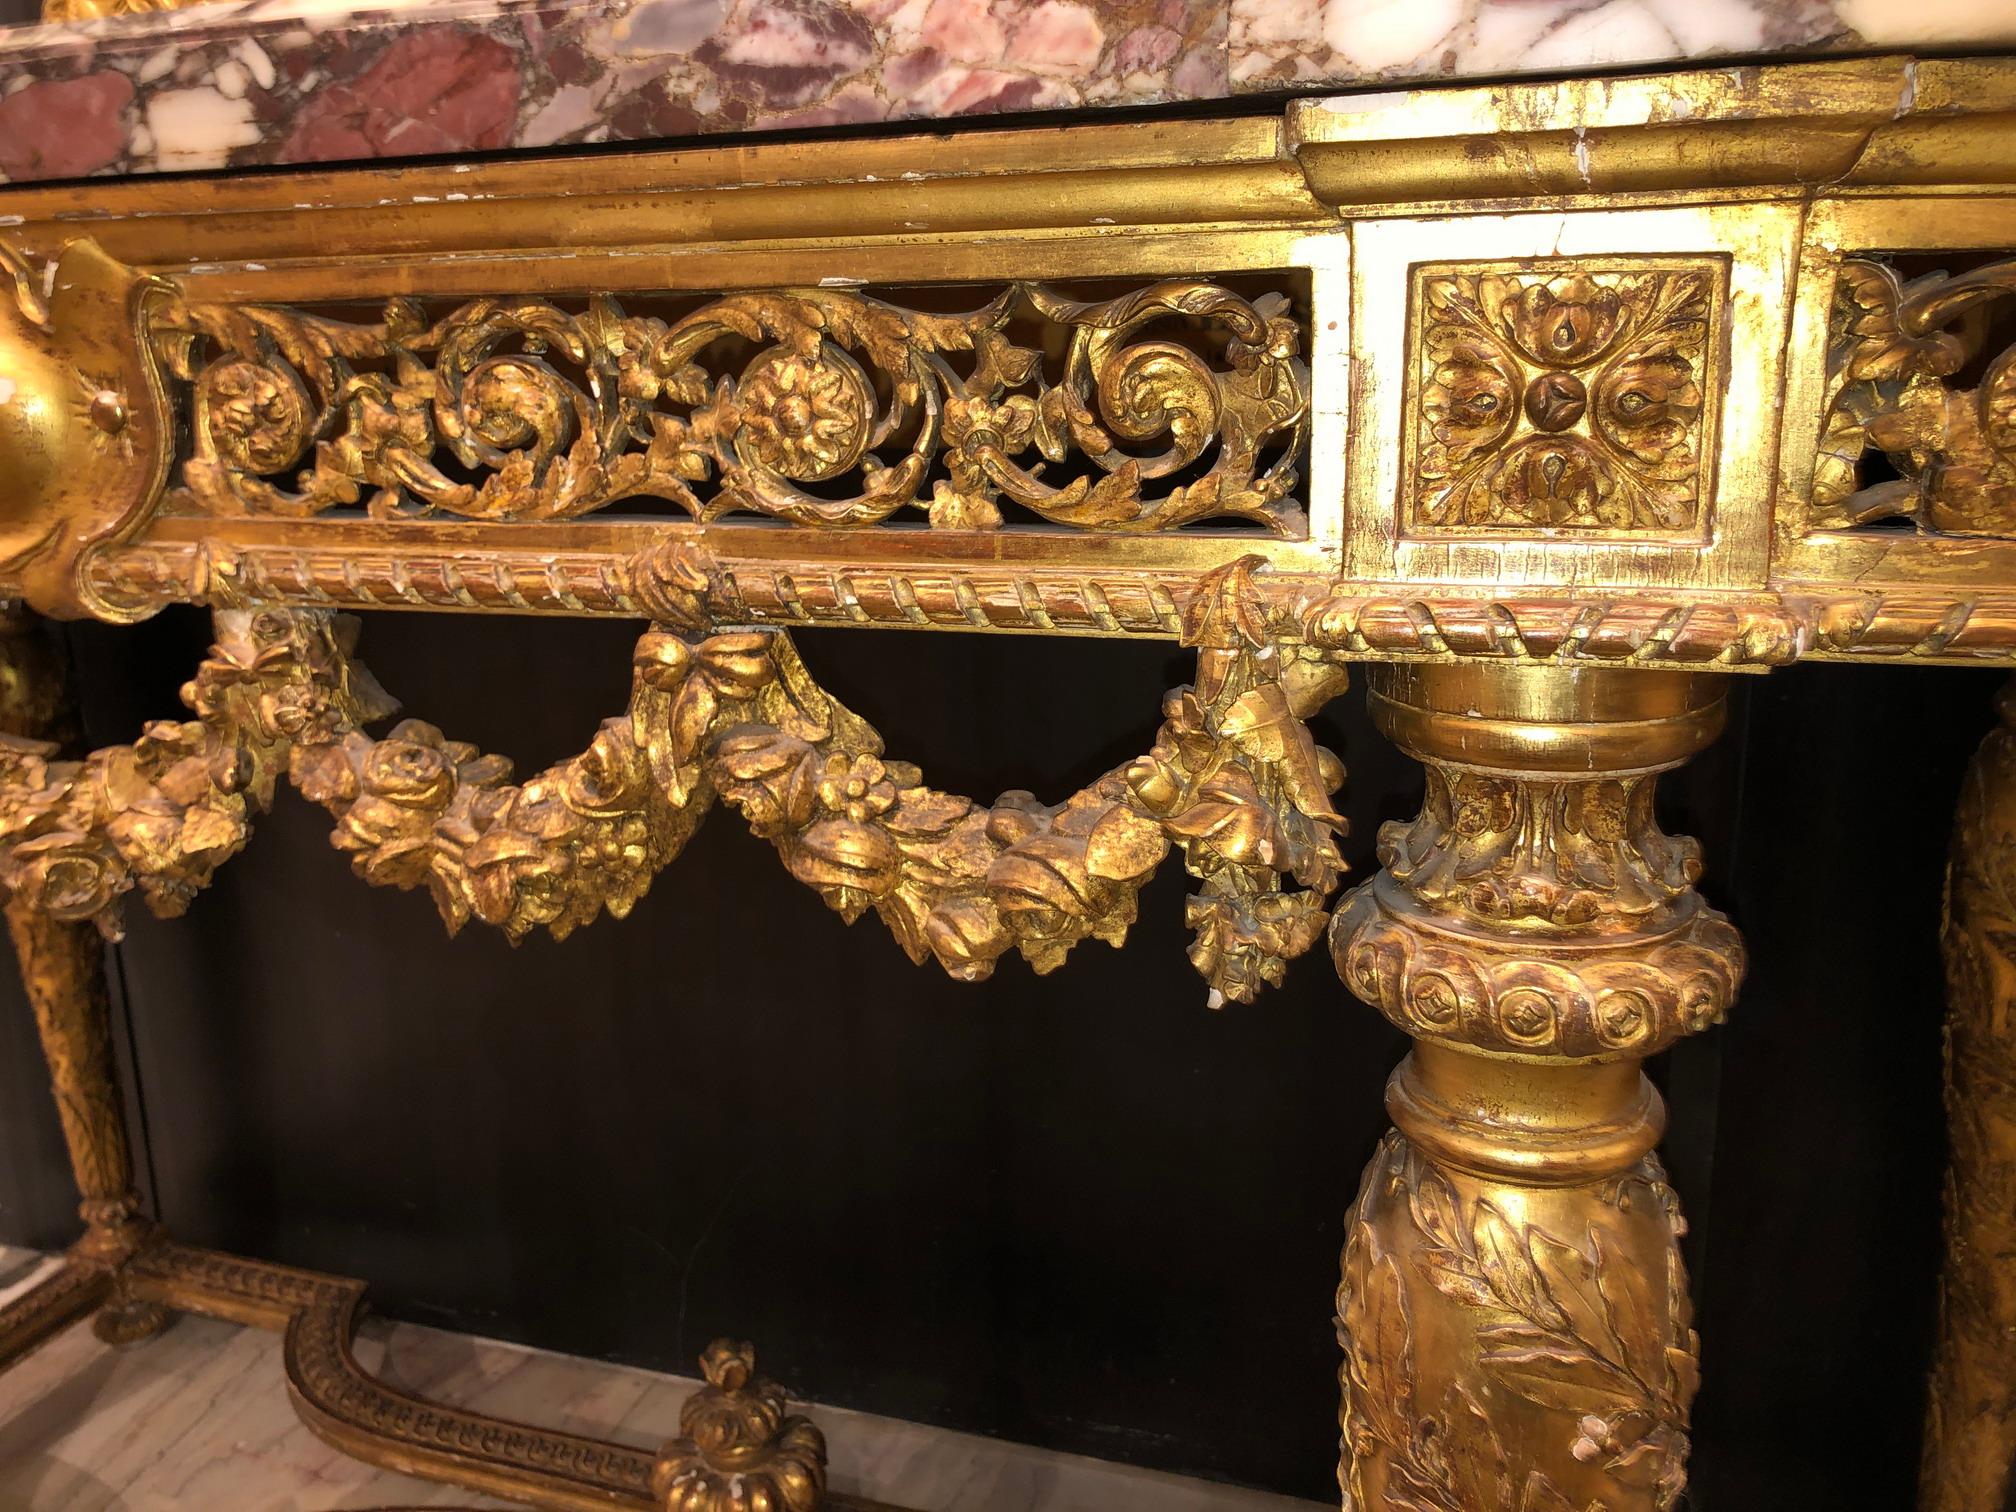 Extraordinaire Console de style Louis XVI en bois doré et sculpté à la main, avec plateau en marbre, signée Maison Leys 3 place de la Madeline Paris. 
France, vers 1880.
Dimensions : Hauteur 36 1/4